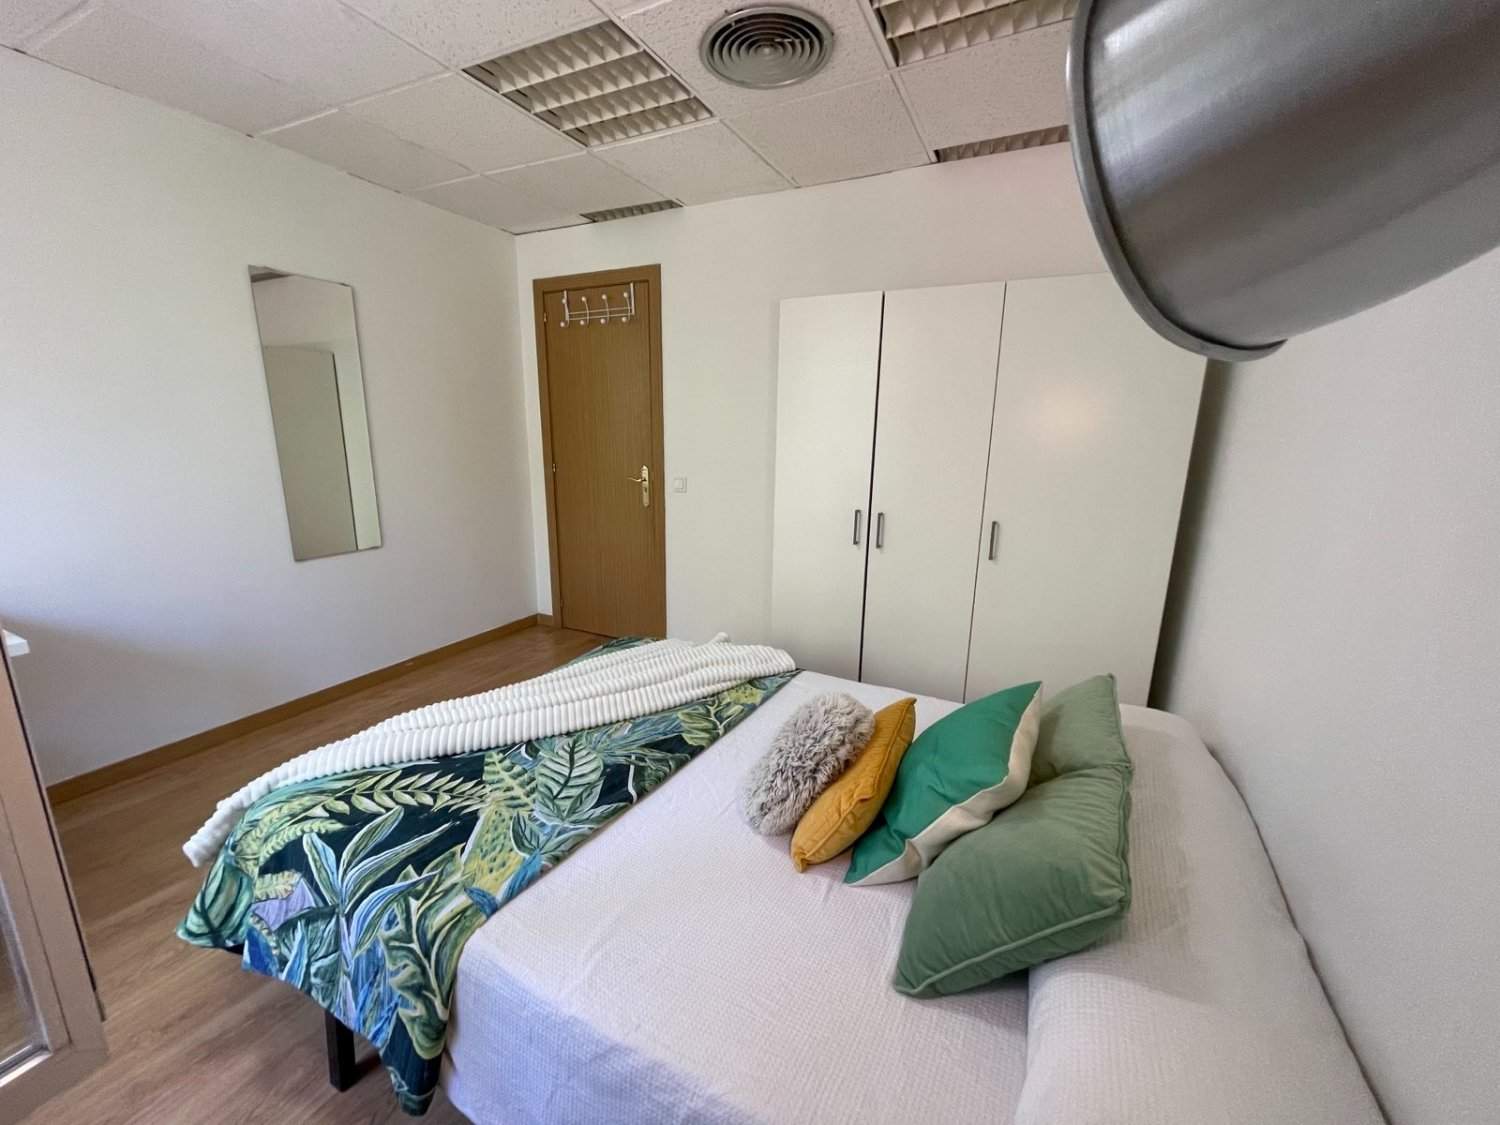 Habitaciones en piso compartido en Madrid - PSB2